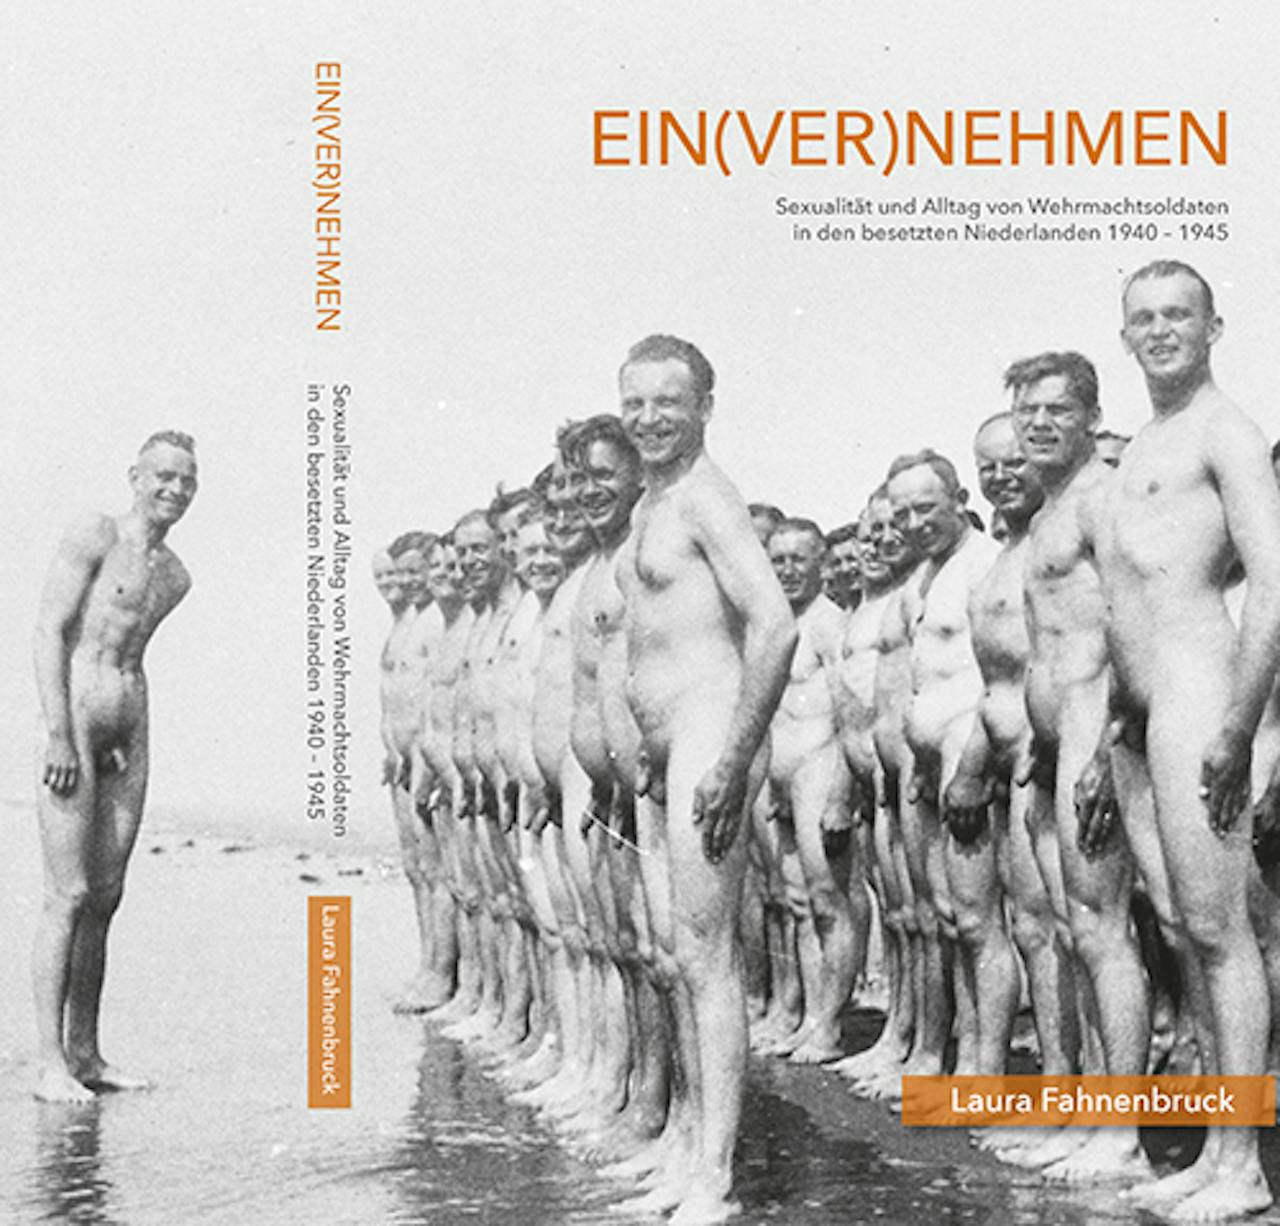 Omslag van het proefschriftEin(ver)nehmen van Laura Fahnenbruck. Er staan naakte mannen op het strand.